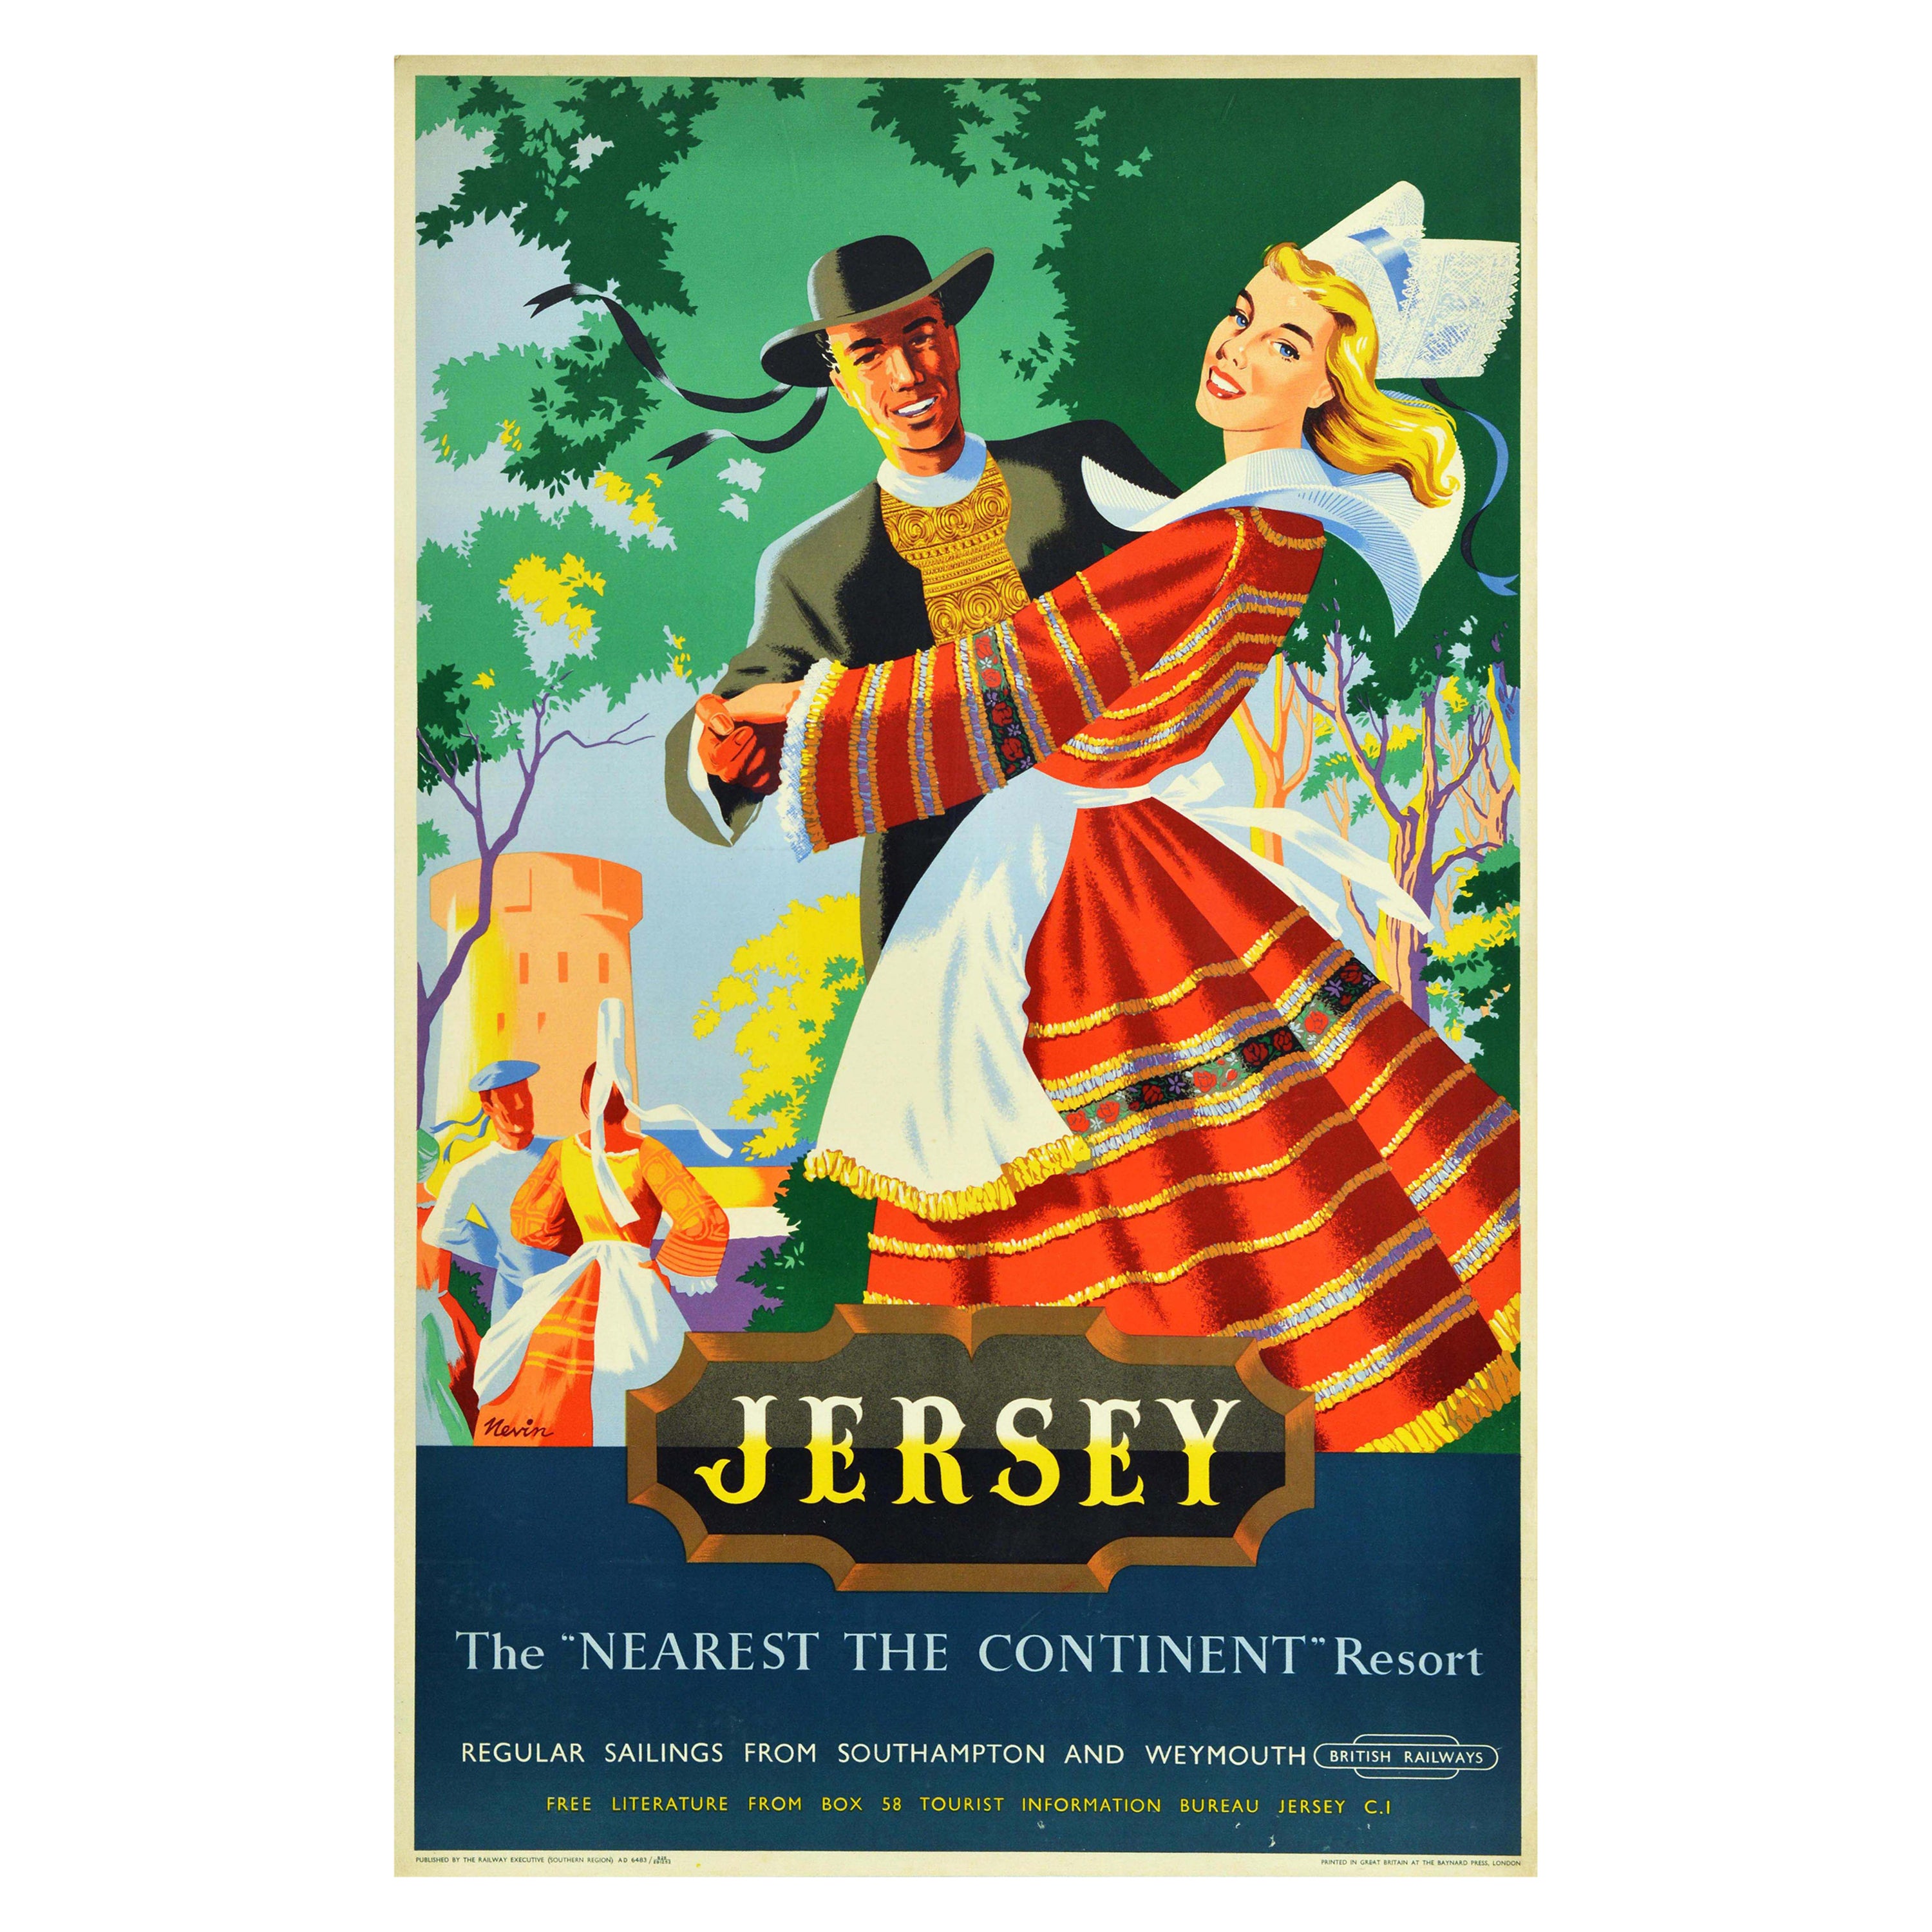 Original Vintage Travel Poster Jersey British Railways Channel Islands Design